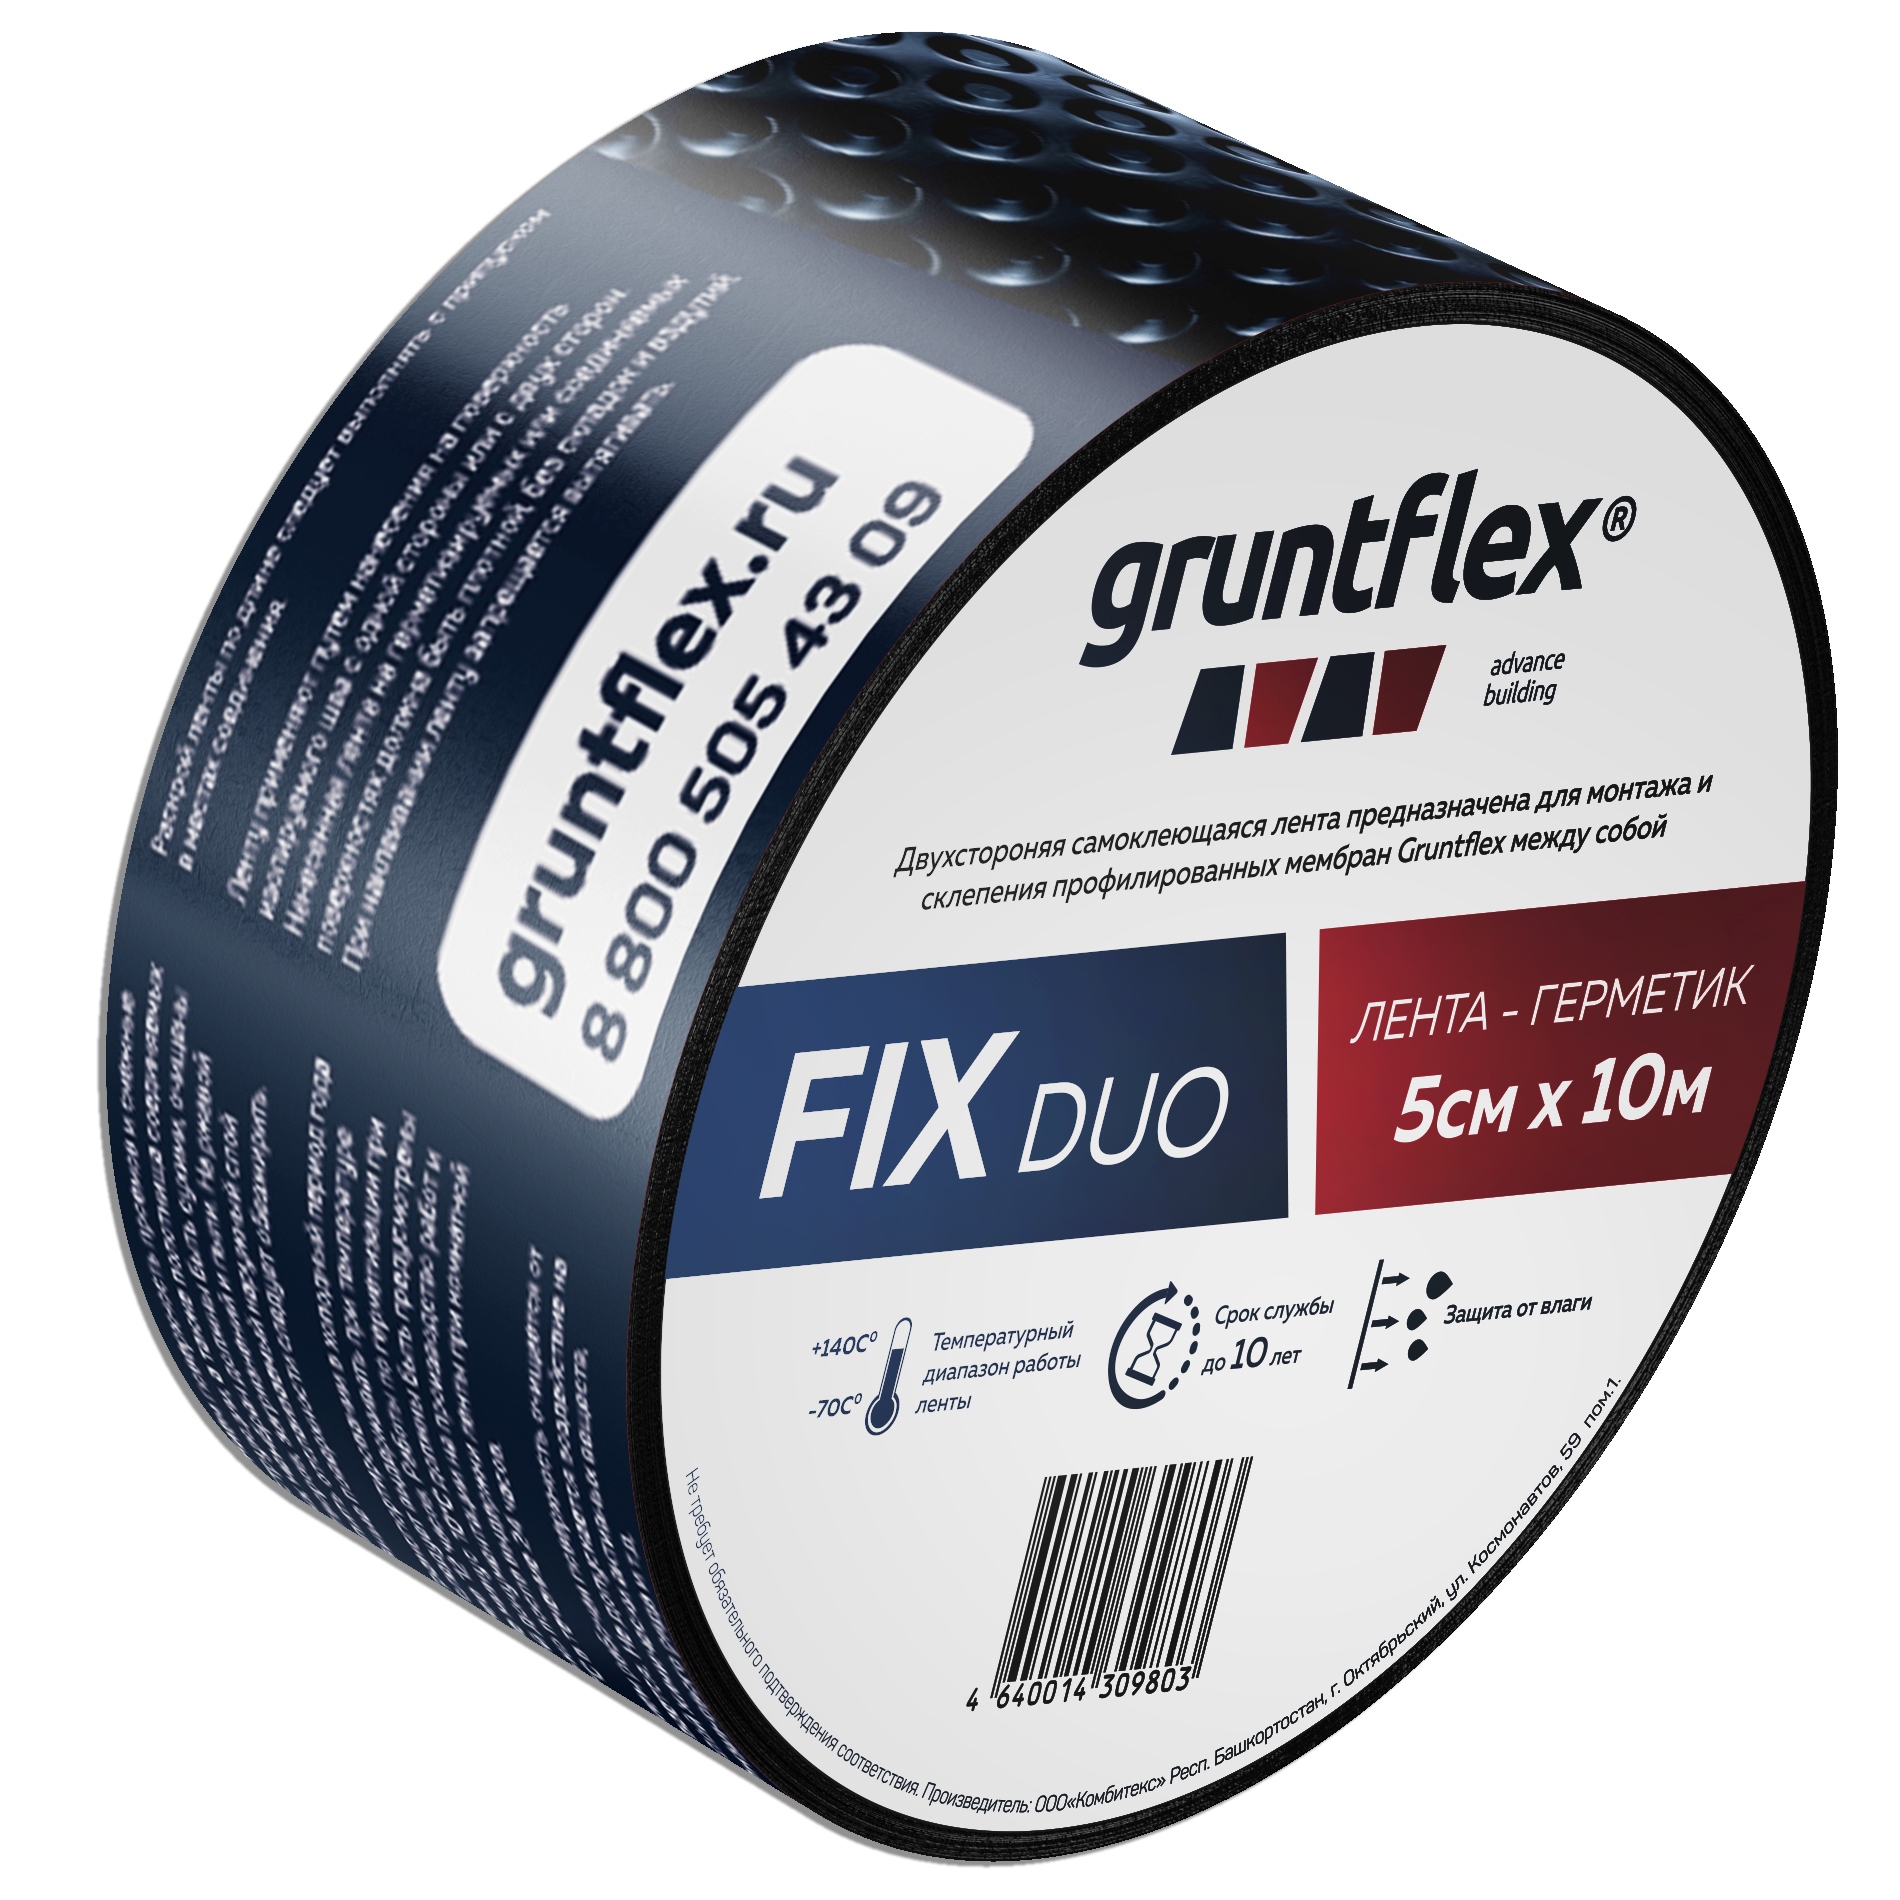 Лента-герметик Gruntflex FIX DUO двухстороняя 5 см x 10 м